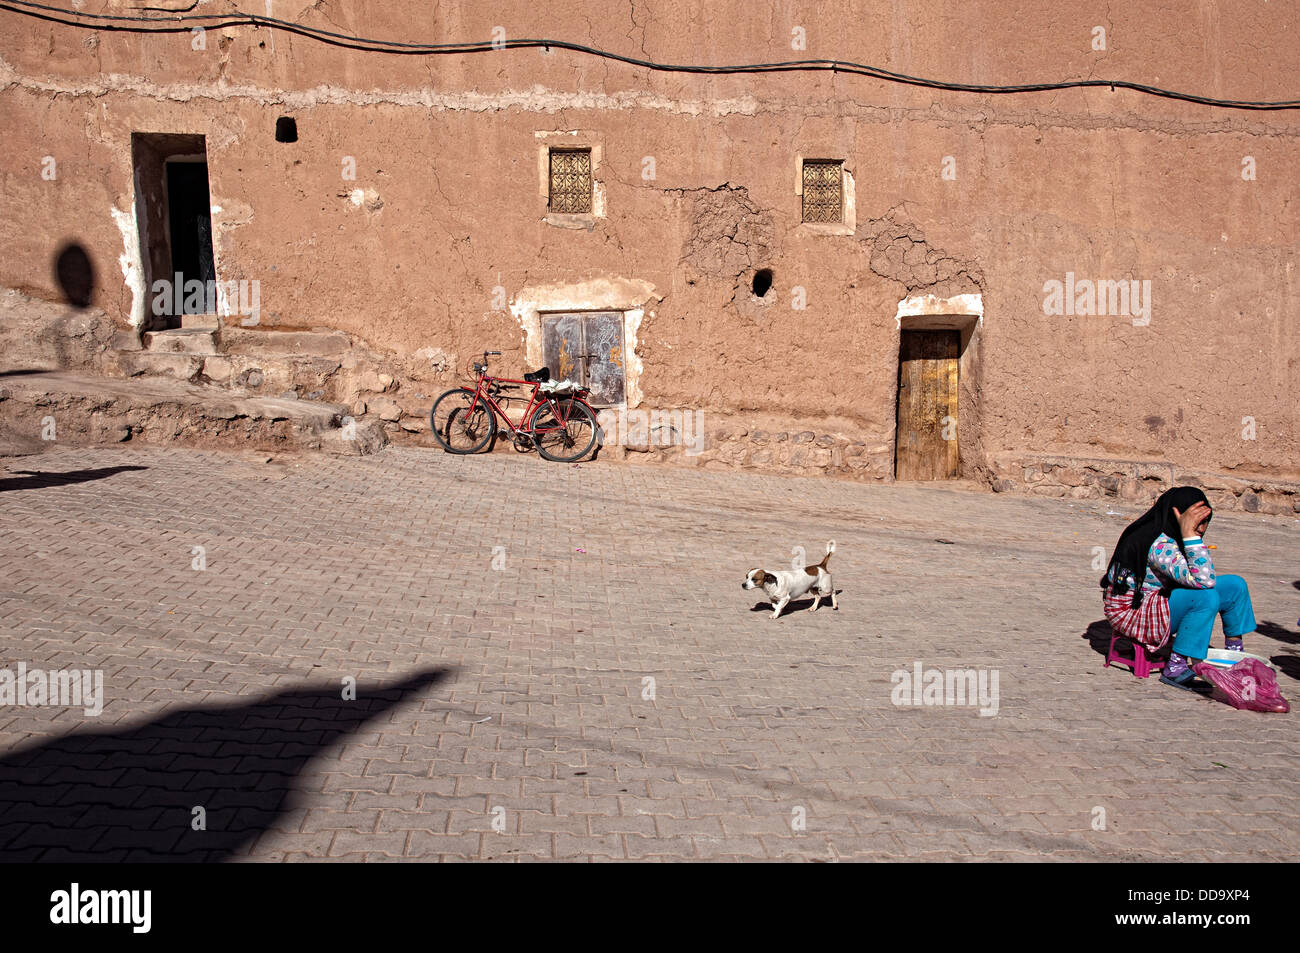 La vie quotidienne dans le mellah (quartier juif). Ouarzazate, Maroc Banque D'Images